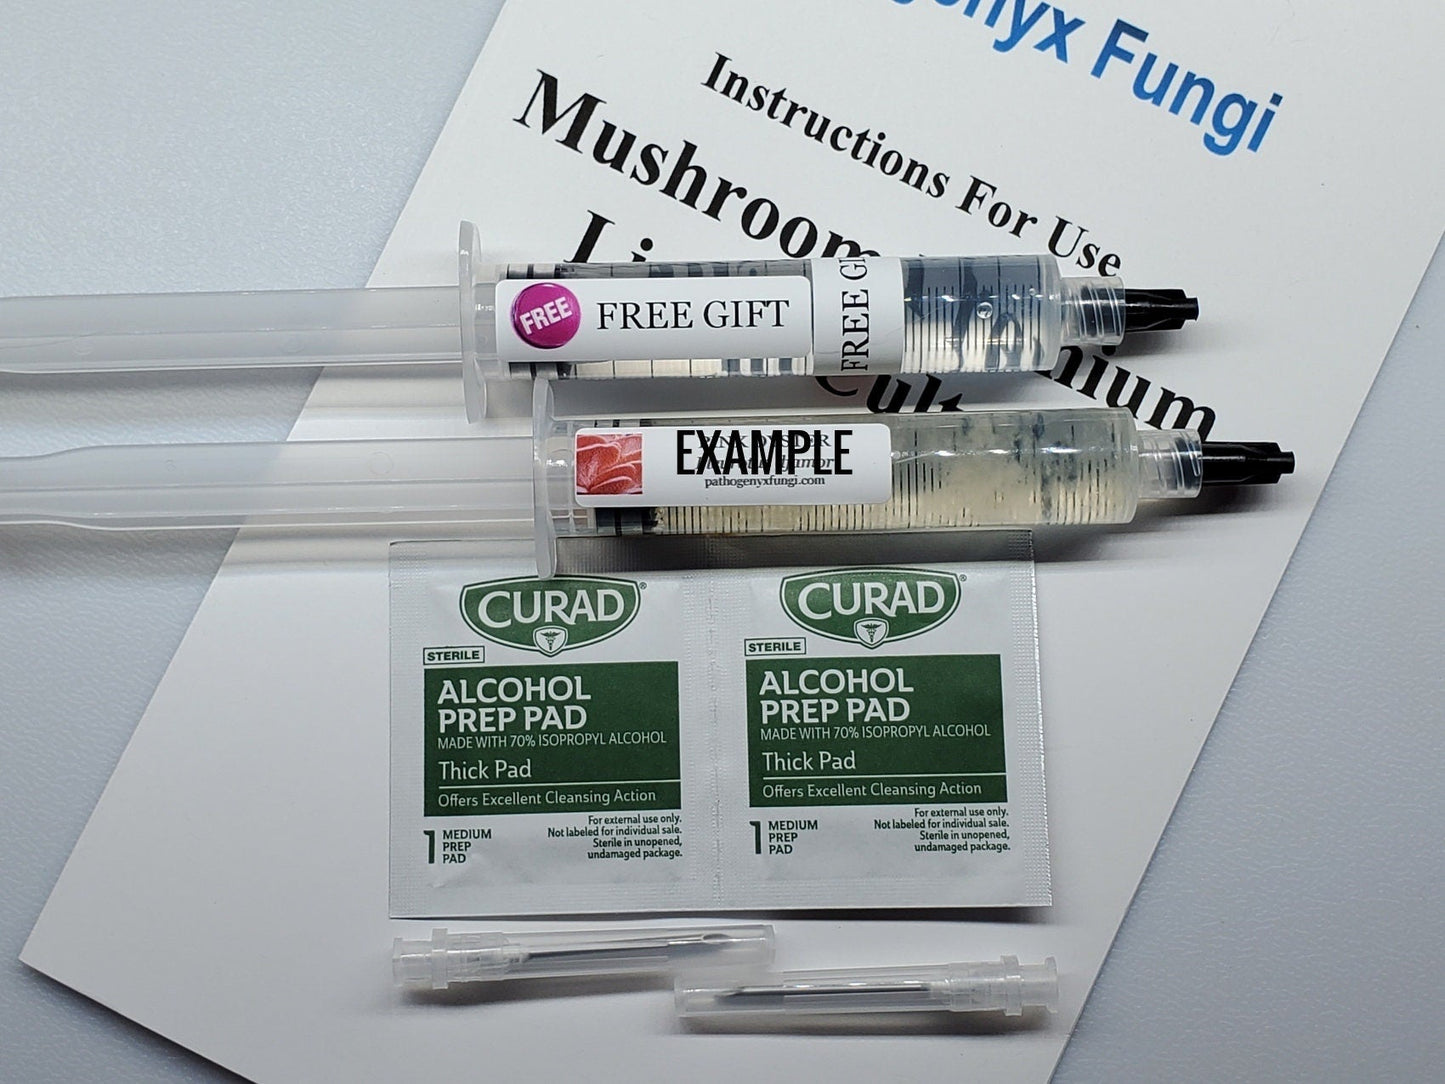 CHAGA Mushroom Premium Liquid Culture Syringe, Premium Mycelium™